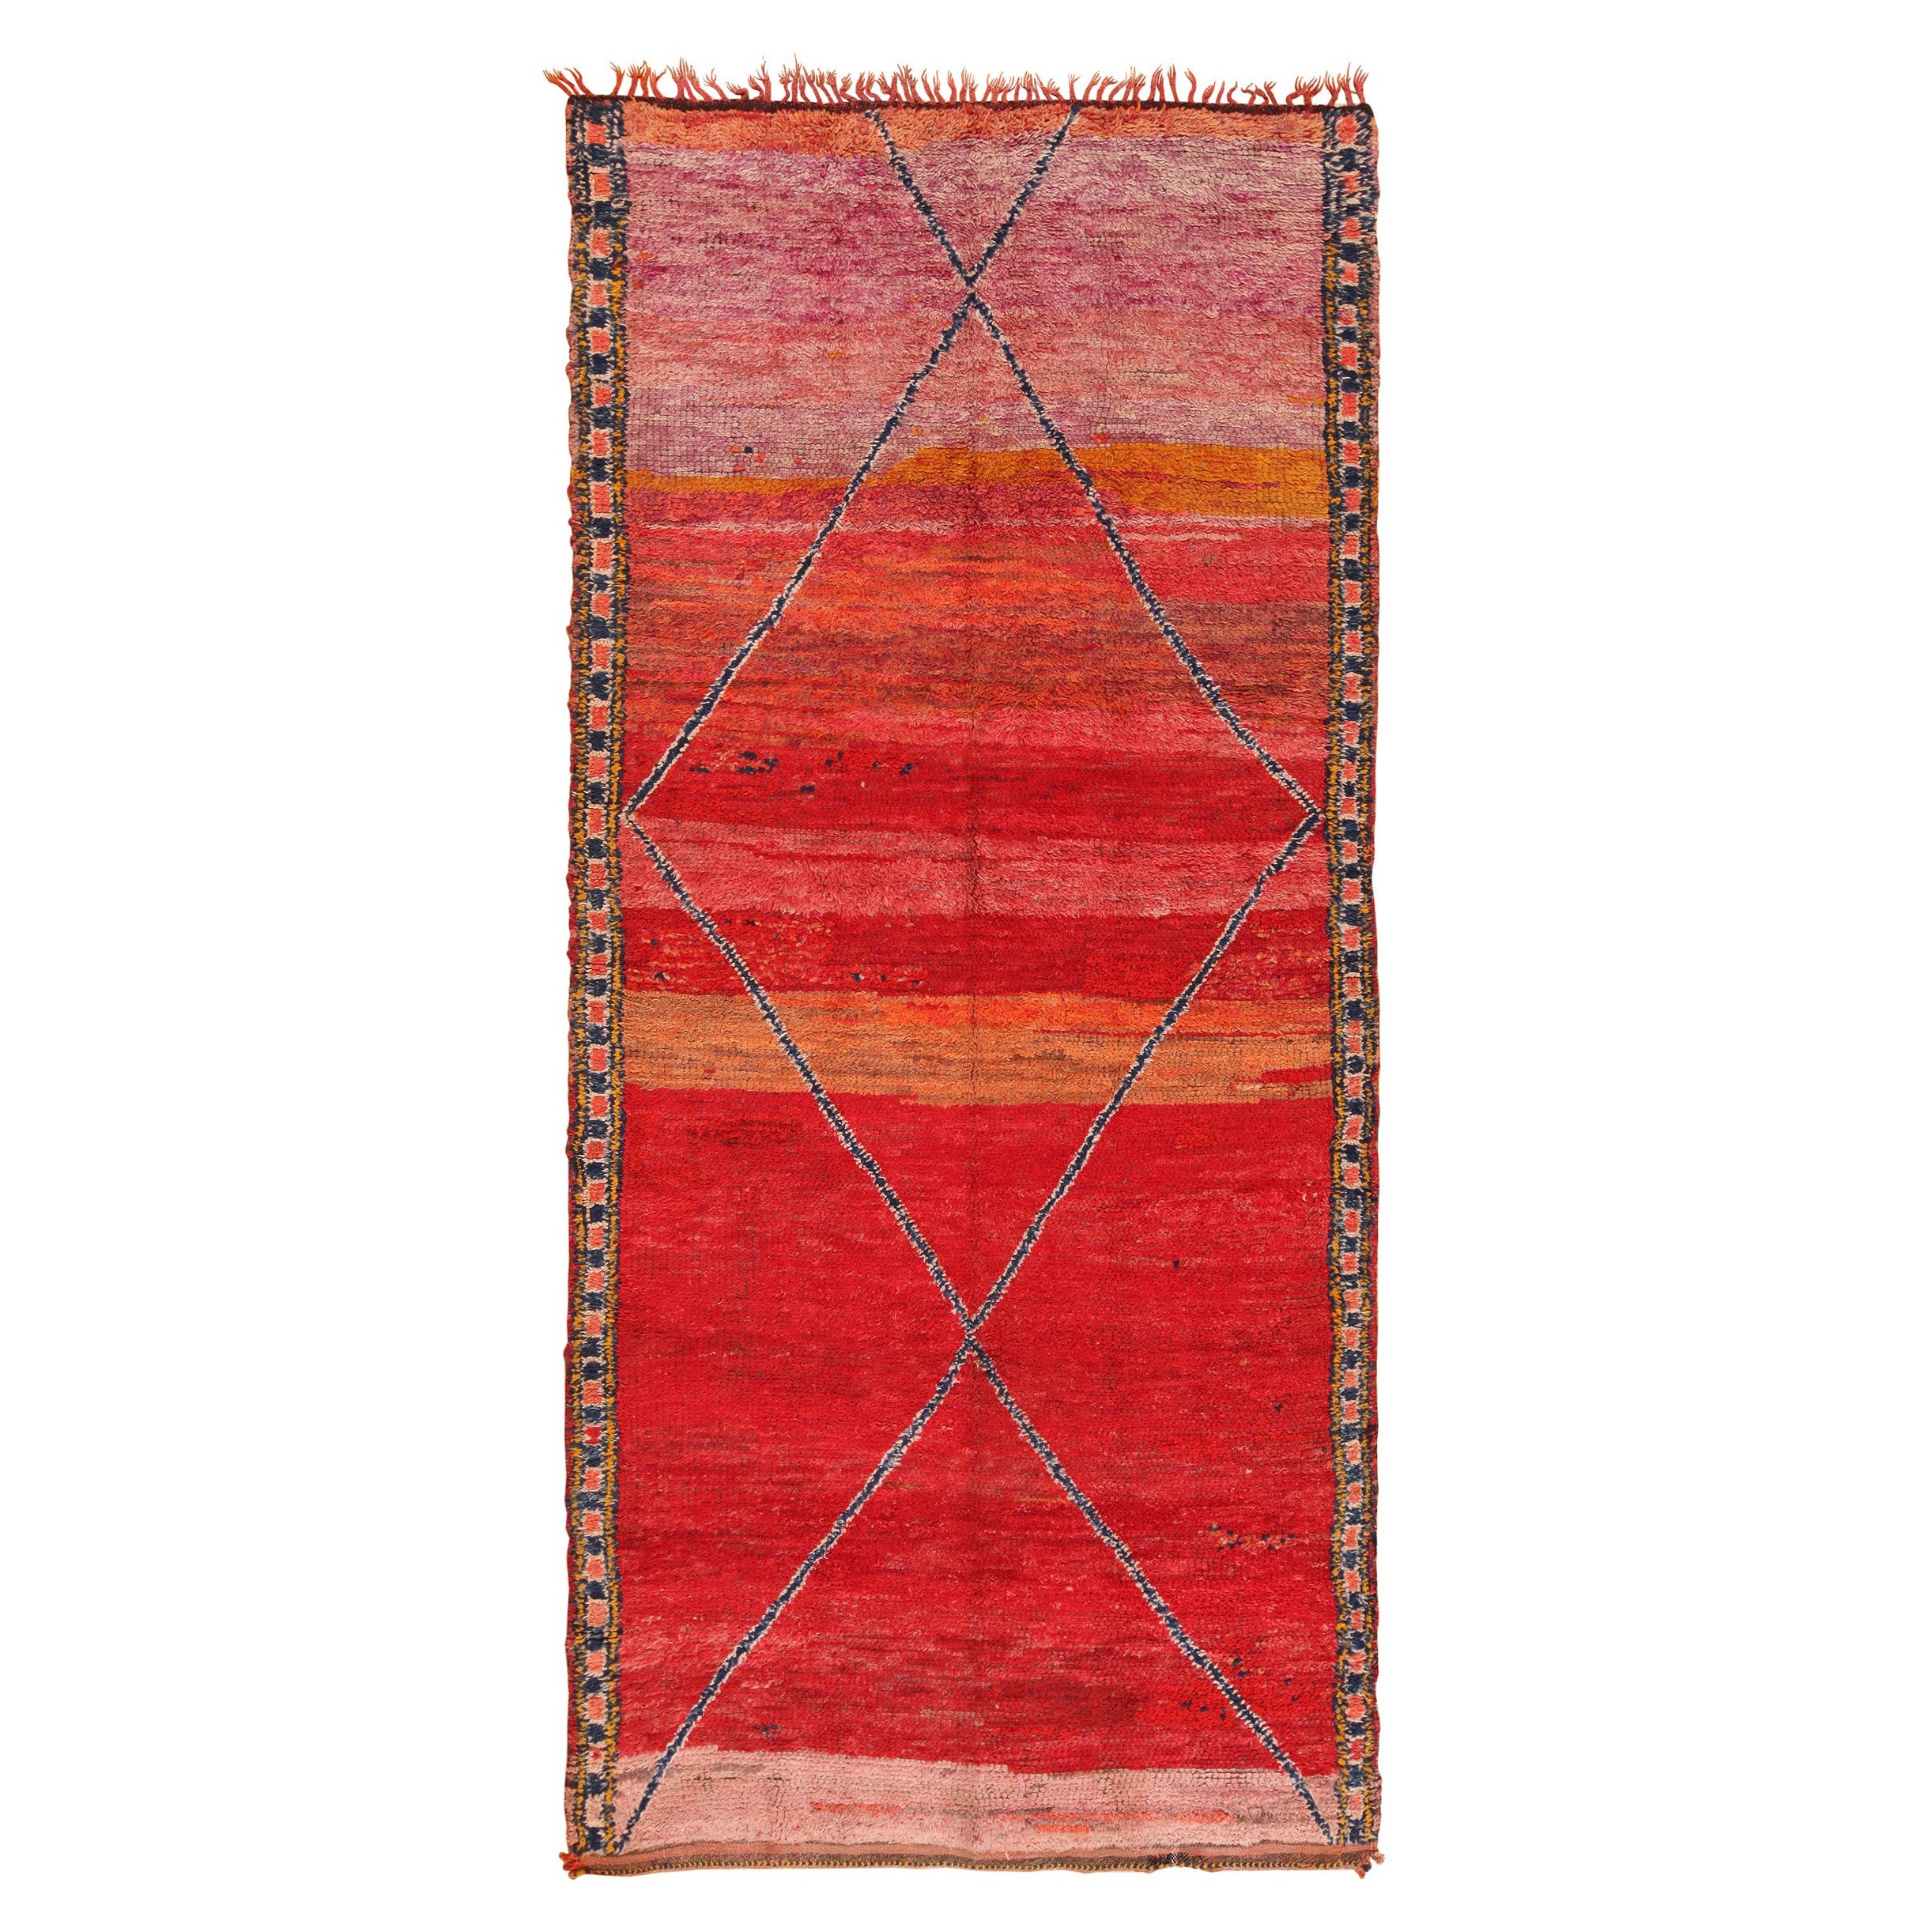 Marokkanischer Vintage-Teppich. Größe: 5 Fuß 8 Zoll x 12 Fuß 